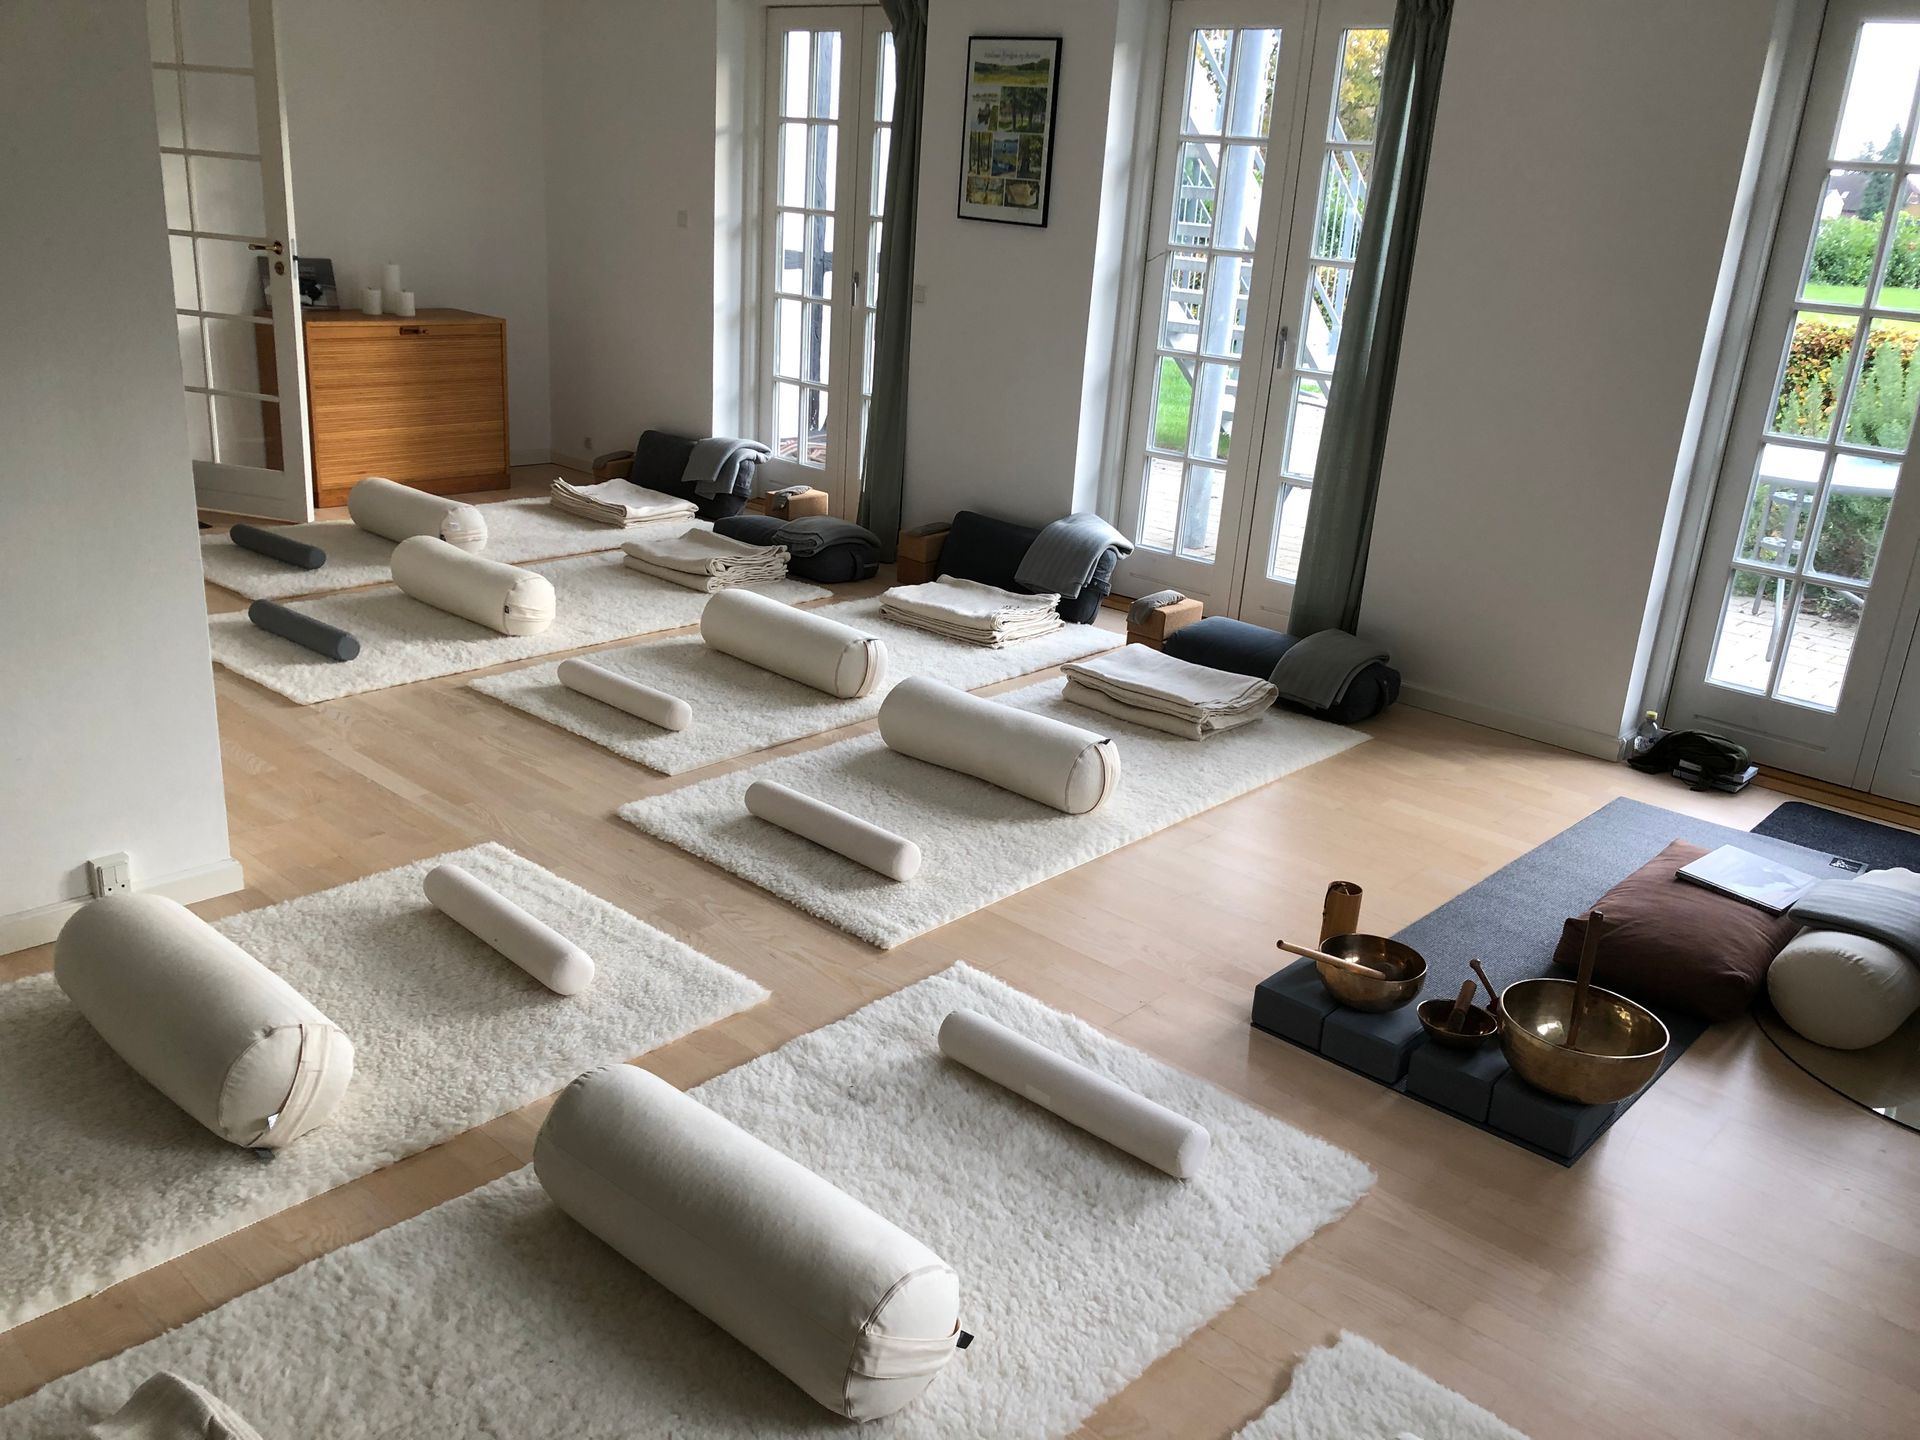 Yoga studie med måtter og puder på gulvet